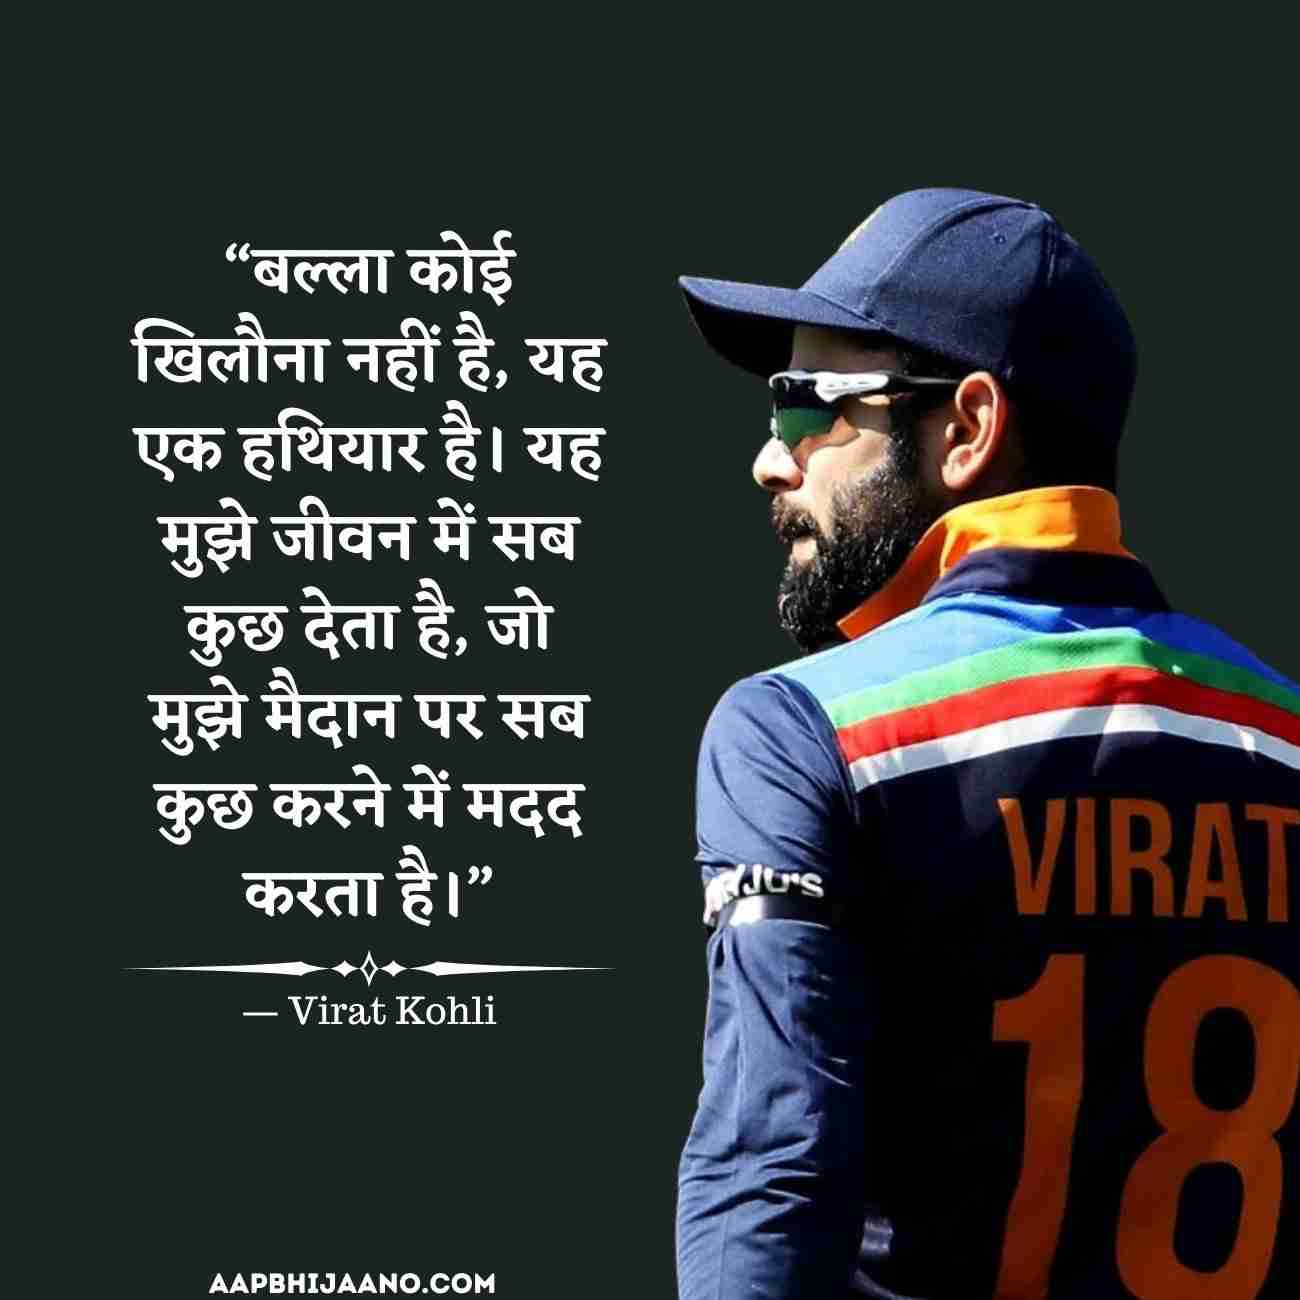 Virat Kohli Quotes in Hindi